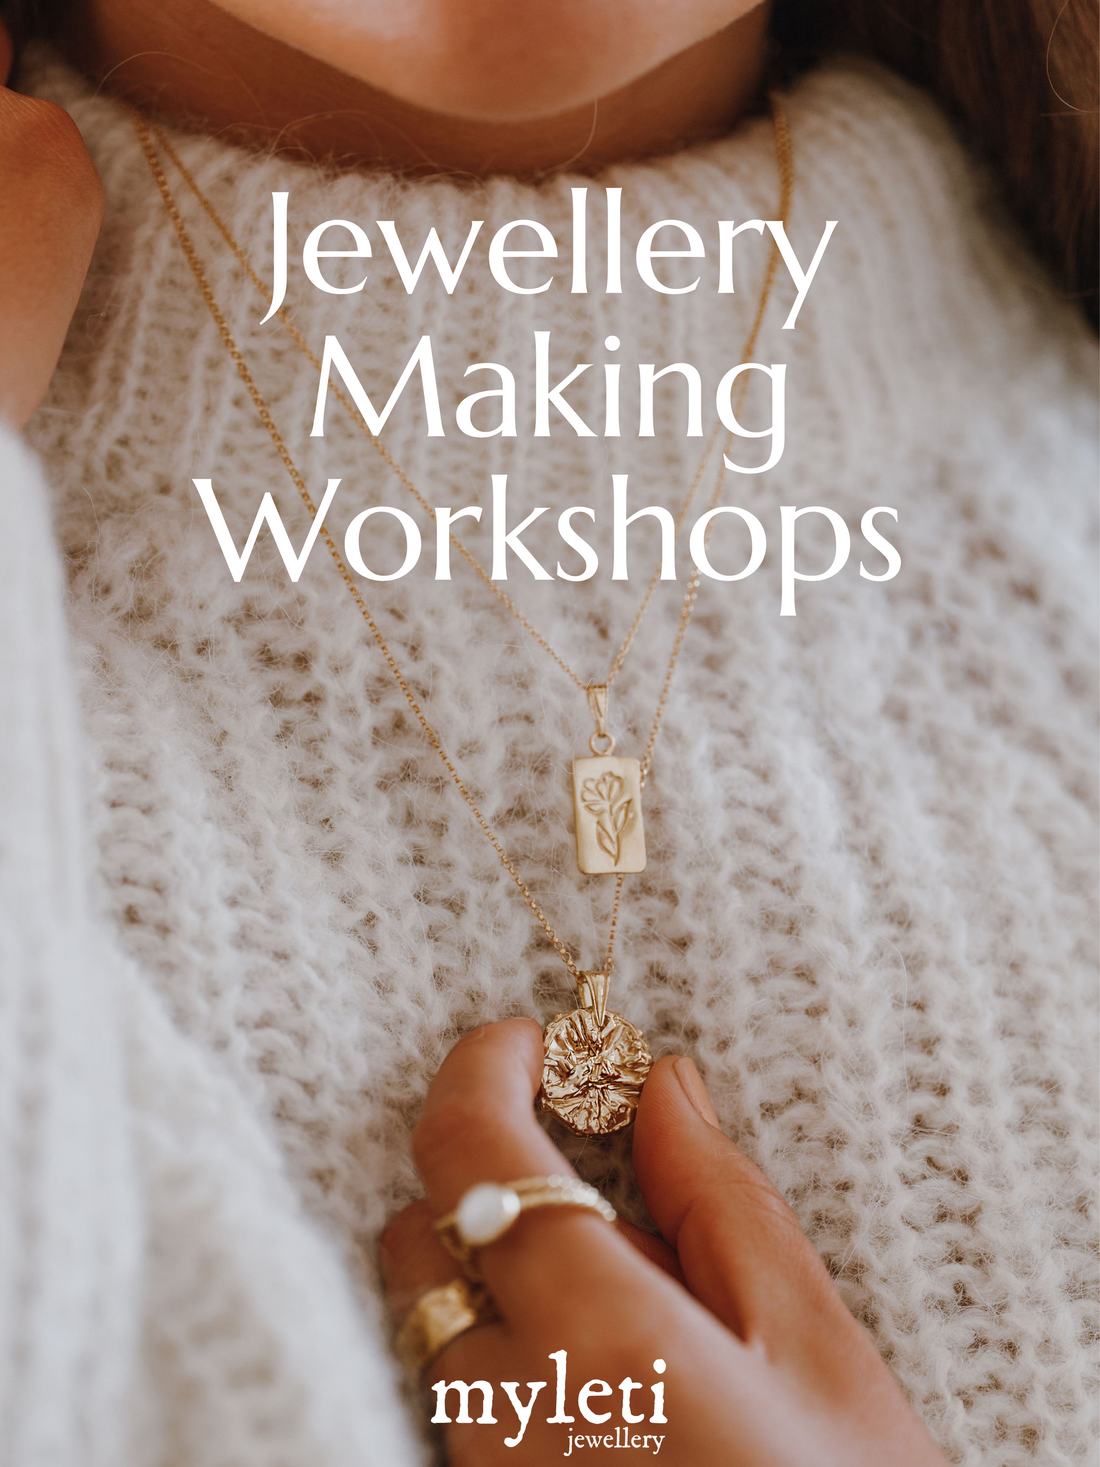 Jewellery Making Workshops in Warwickshire